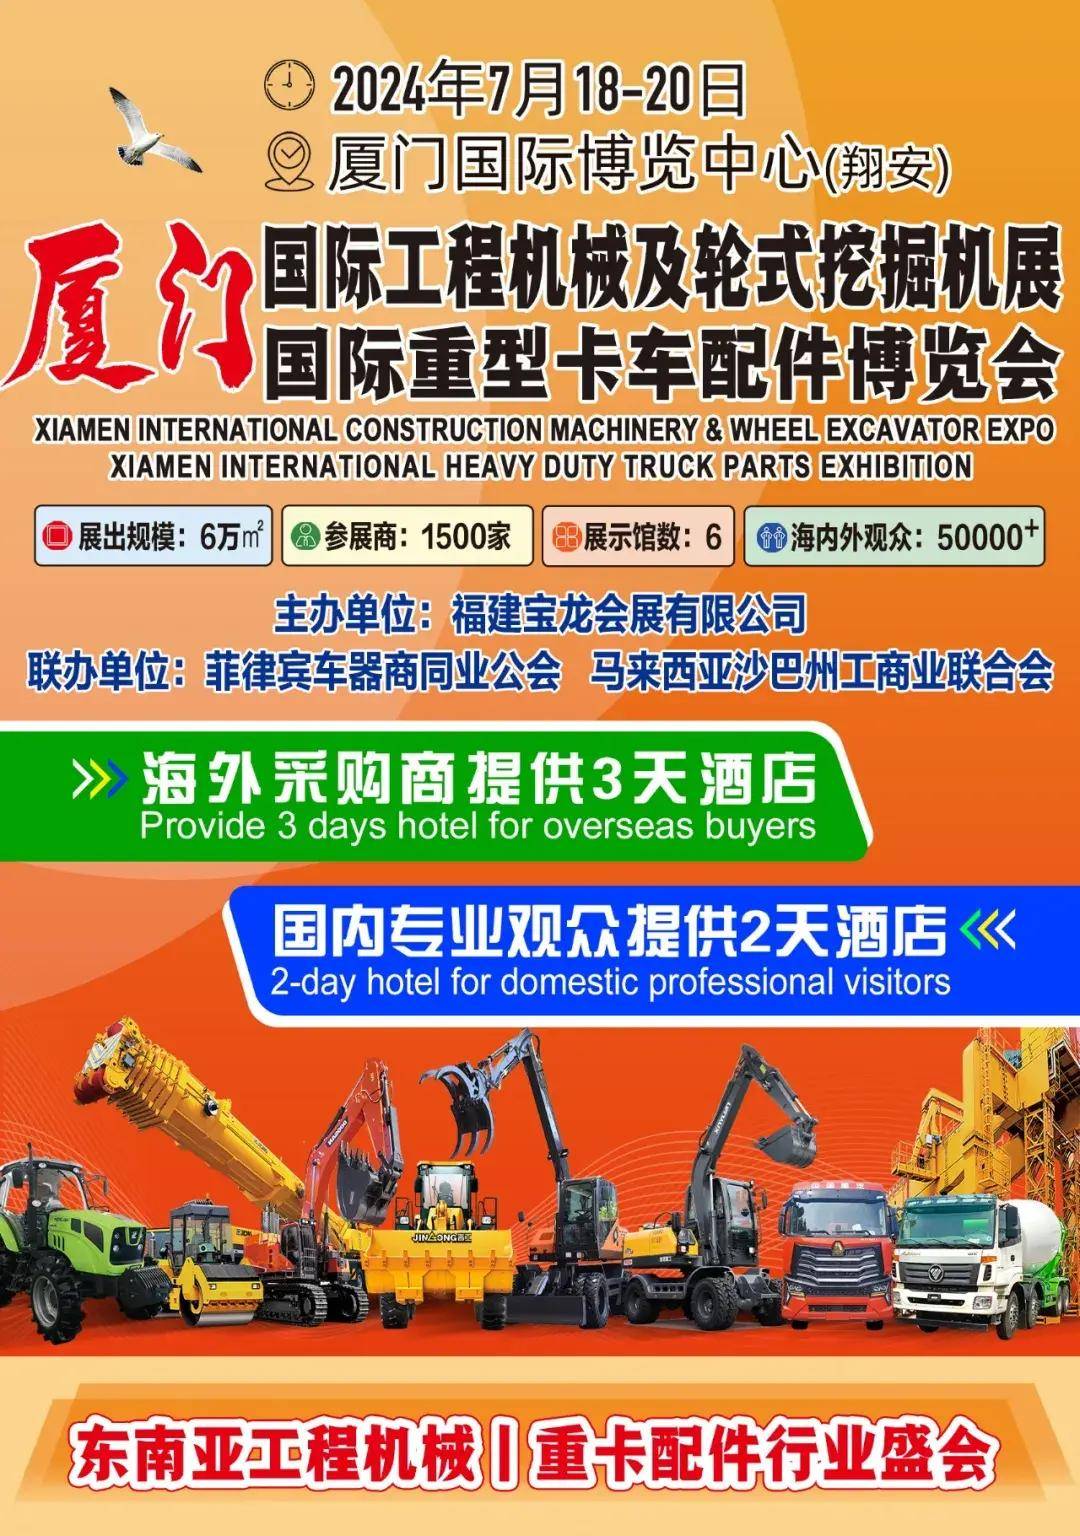  厦门国际工程机械及轮式挖掘机展暨厦门国际重型卡车配件博览会